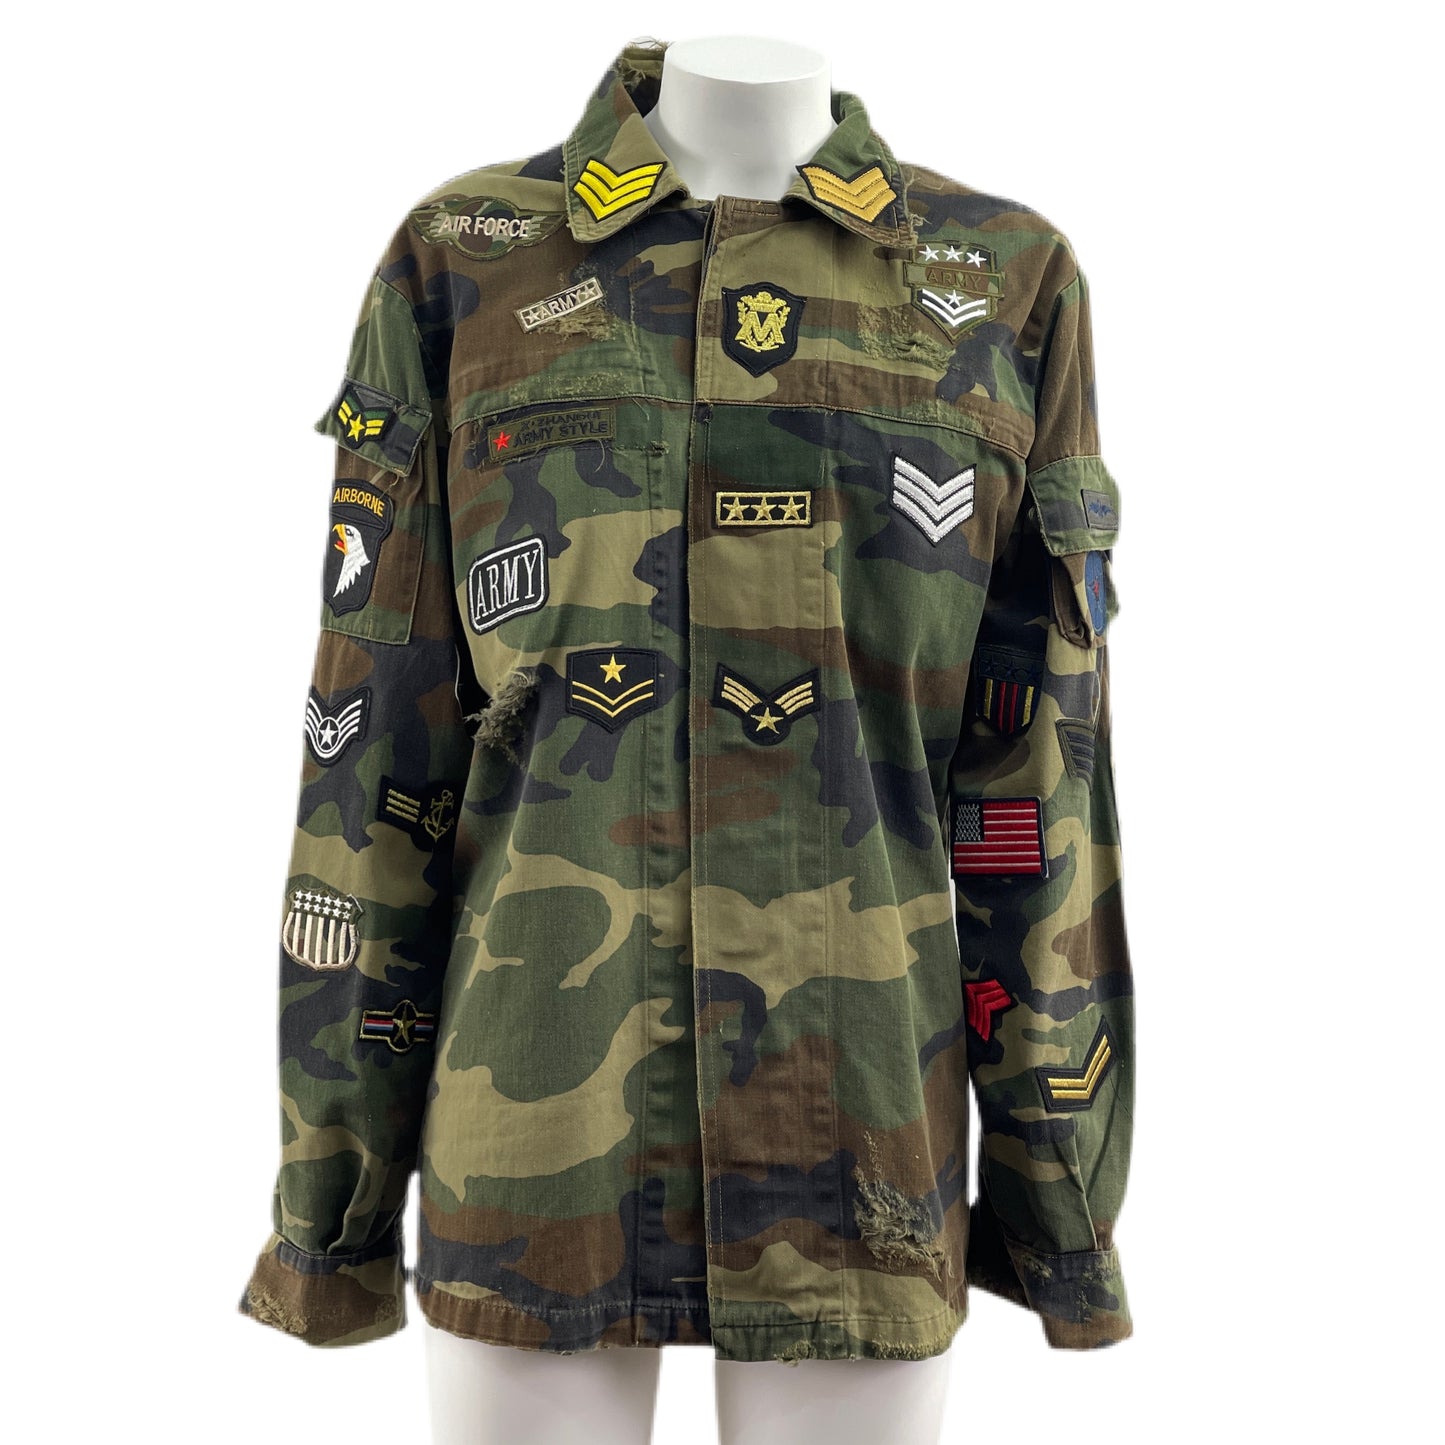 Camicia Militare Camouflage con patch militari,patch drago retro TG. L